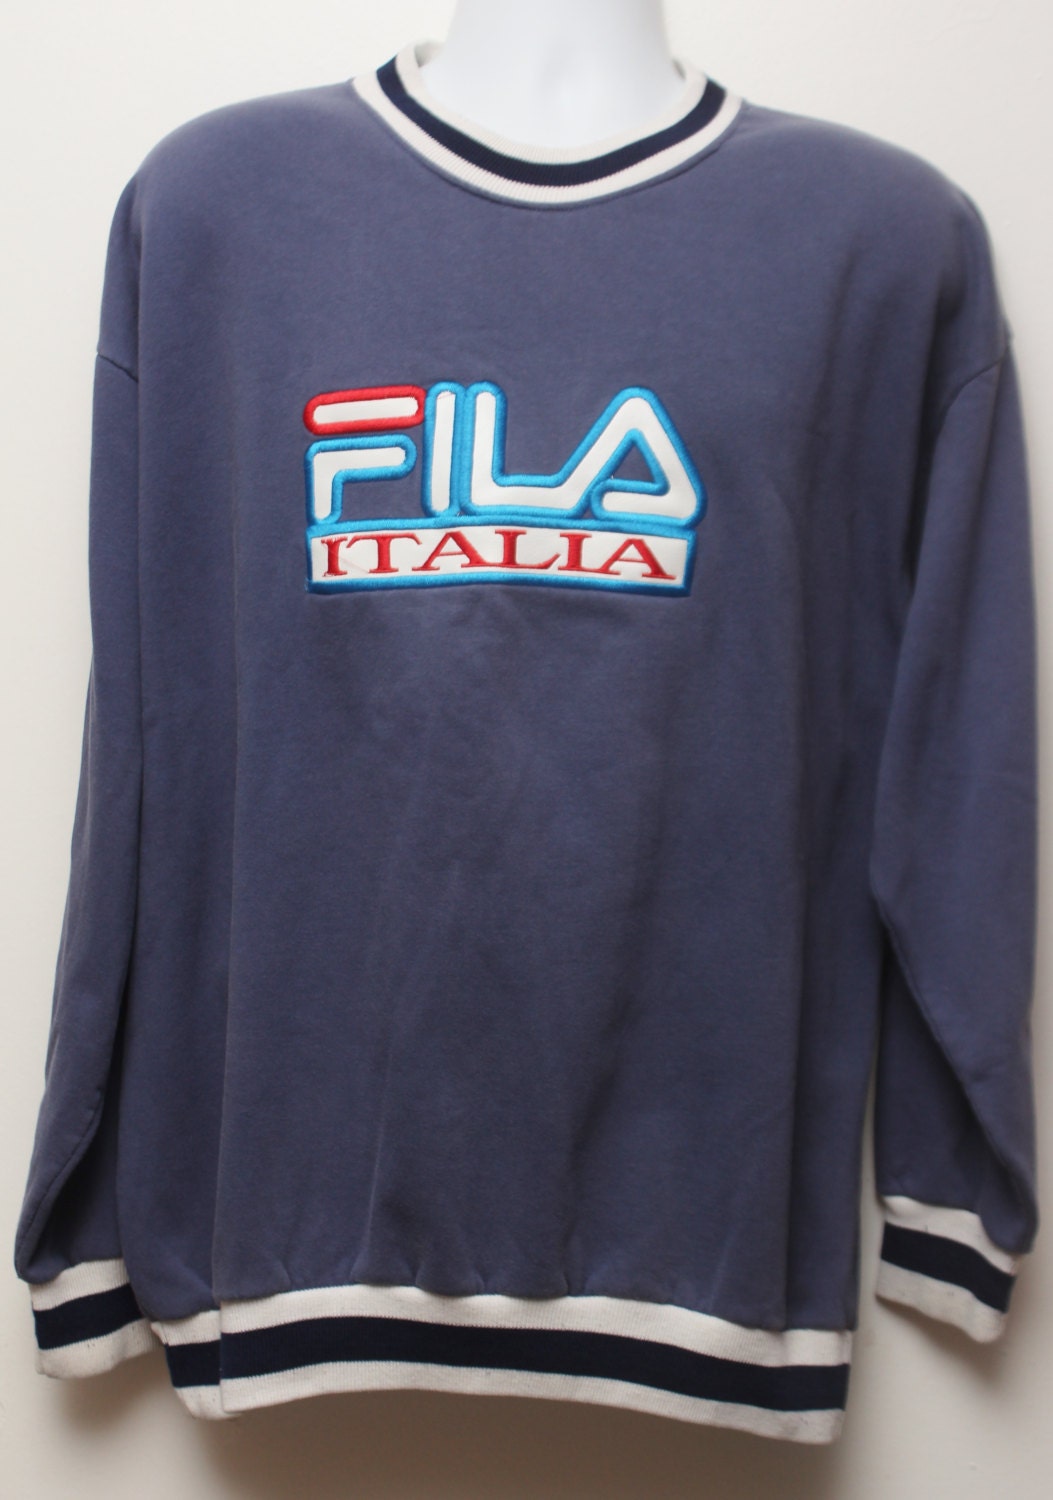 Rare 90's Vintage FILA ITALIA Sweatshirt Sz: